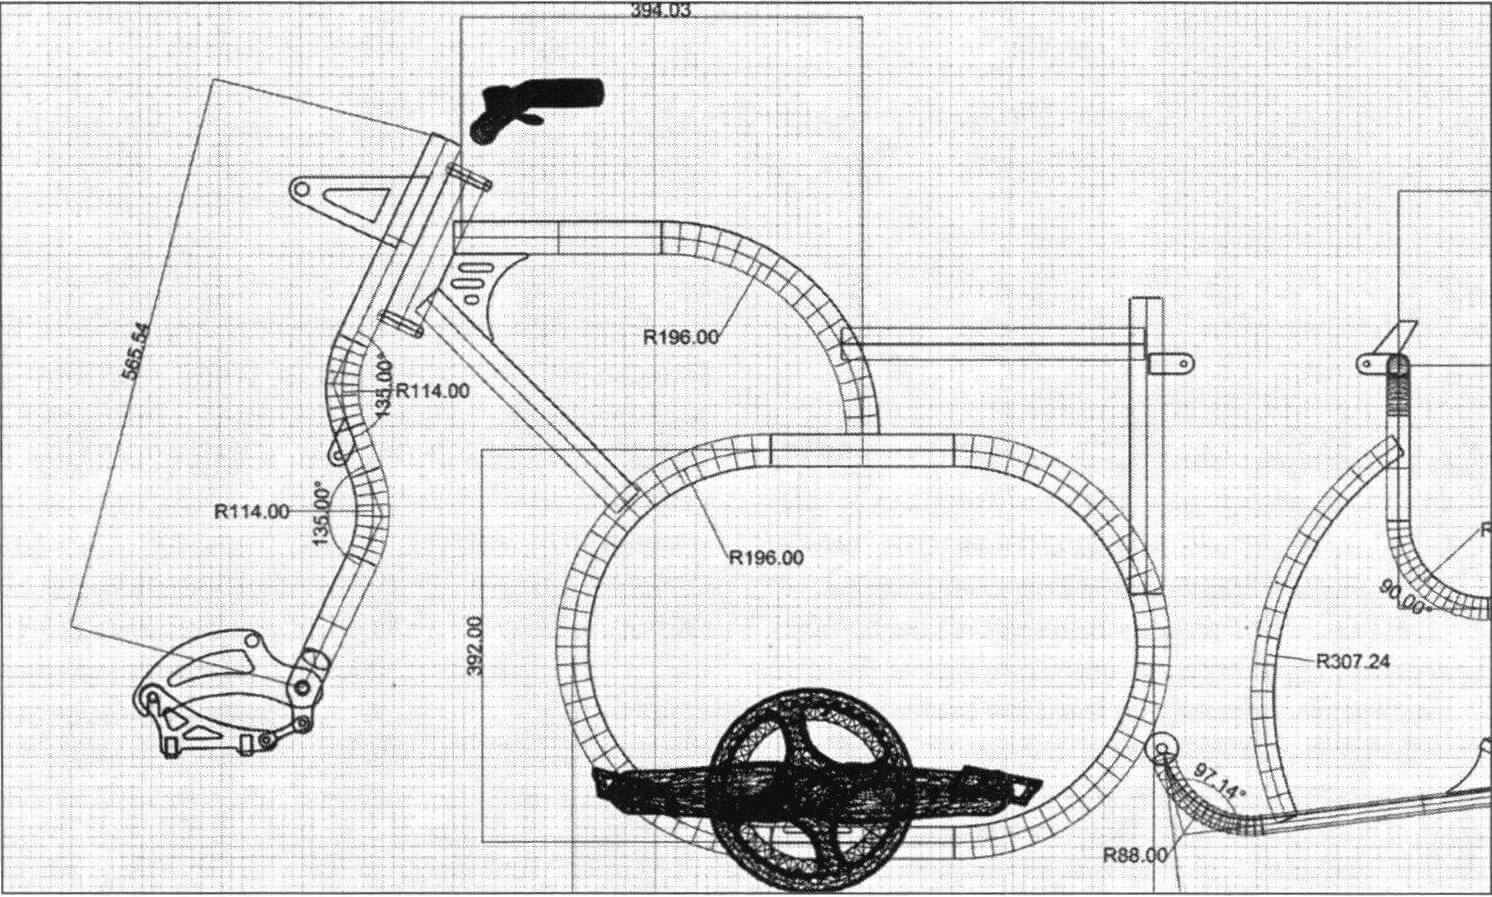 Велосипед создавался с использованием программ компьютерного проектирования и 3D-моделирования